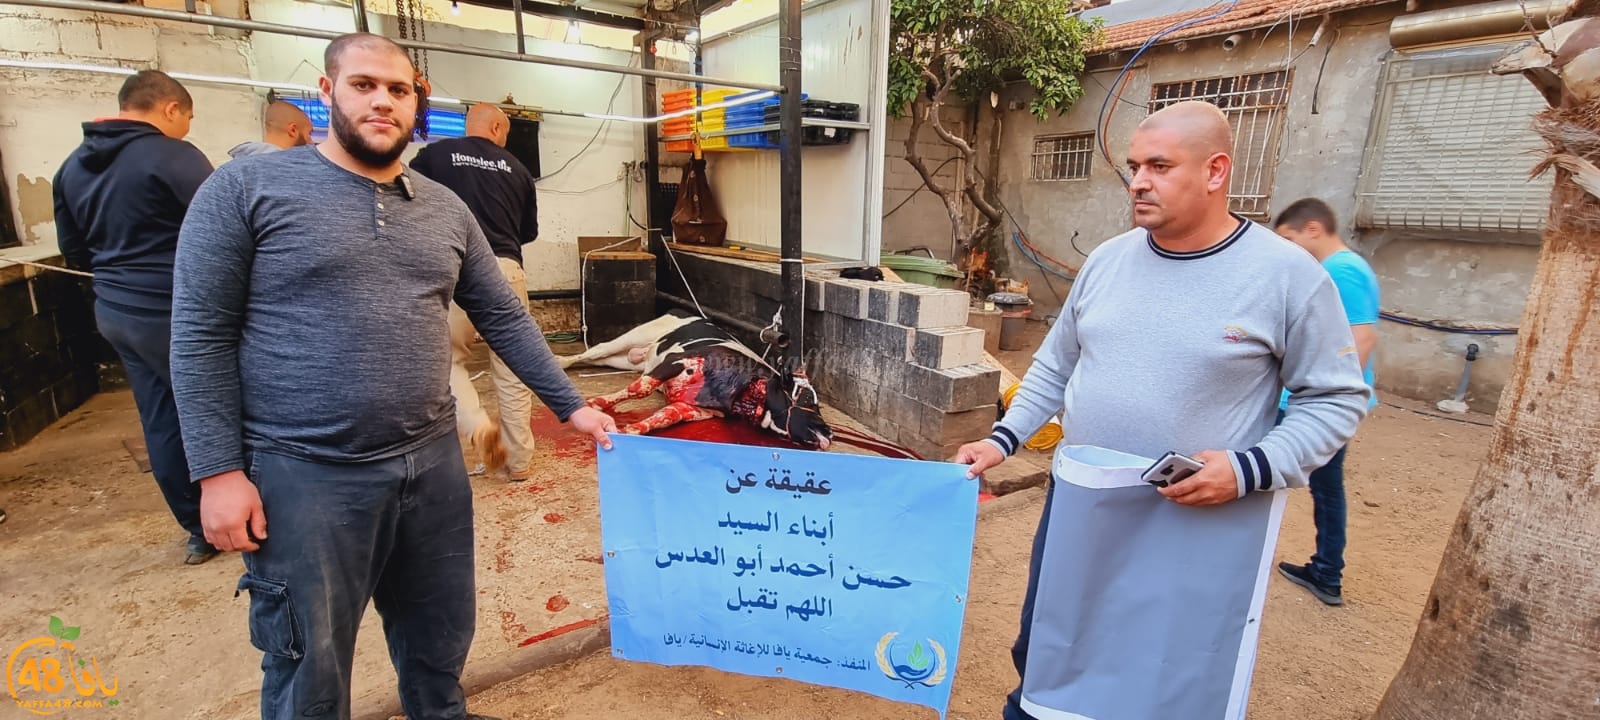 فيديو: جمعيّة يافا تذبح عجلين استعداداً لتوزيع لحومهما ضمن مشروع إحياء سنة العقائق والصدقات